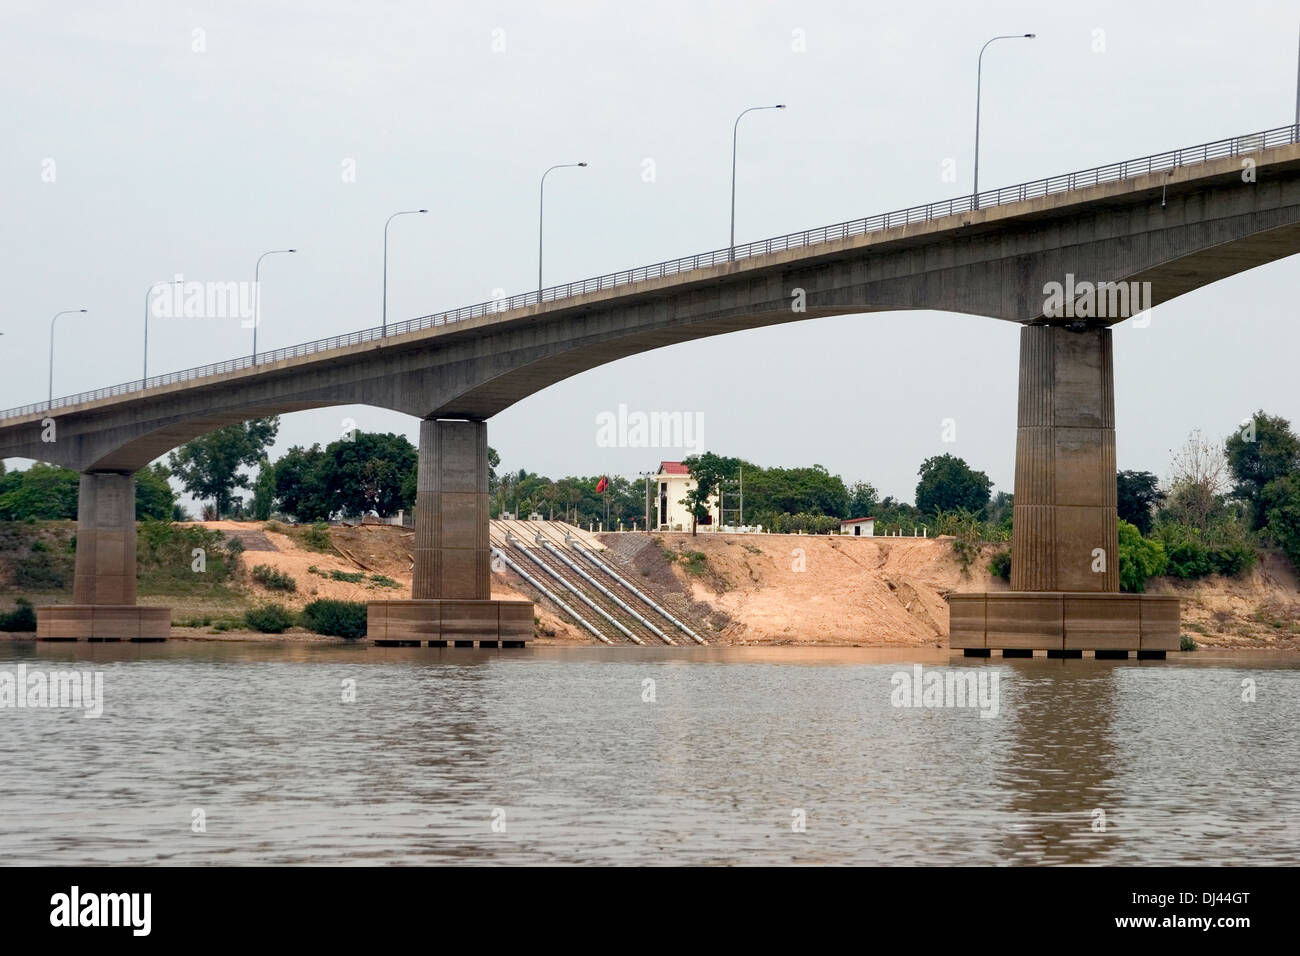 Un pont enjambe le Mékong entre le Laos et la Thaïlande dans la ville frontière de Nong Khai, Thaïlande (Kai). Banque D'Images